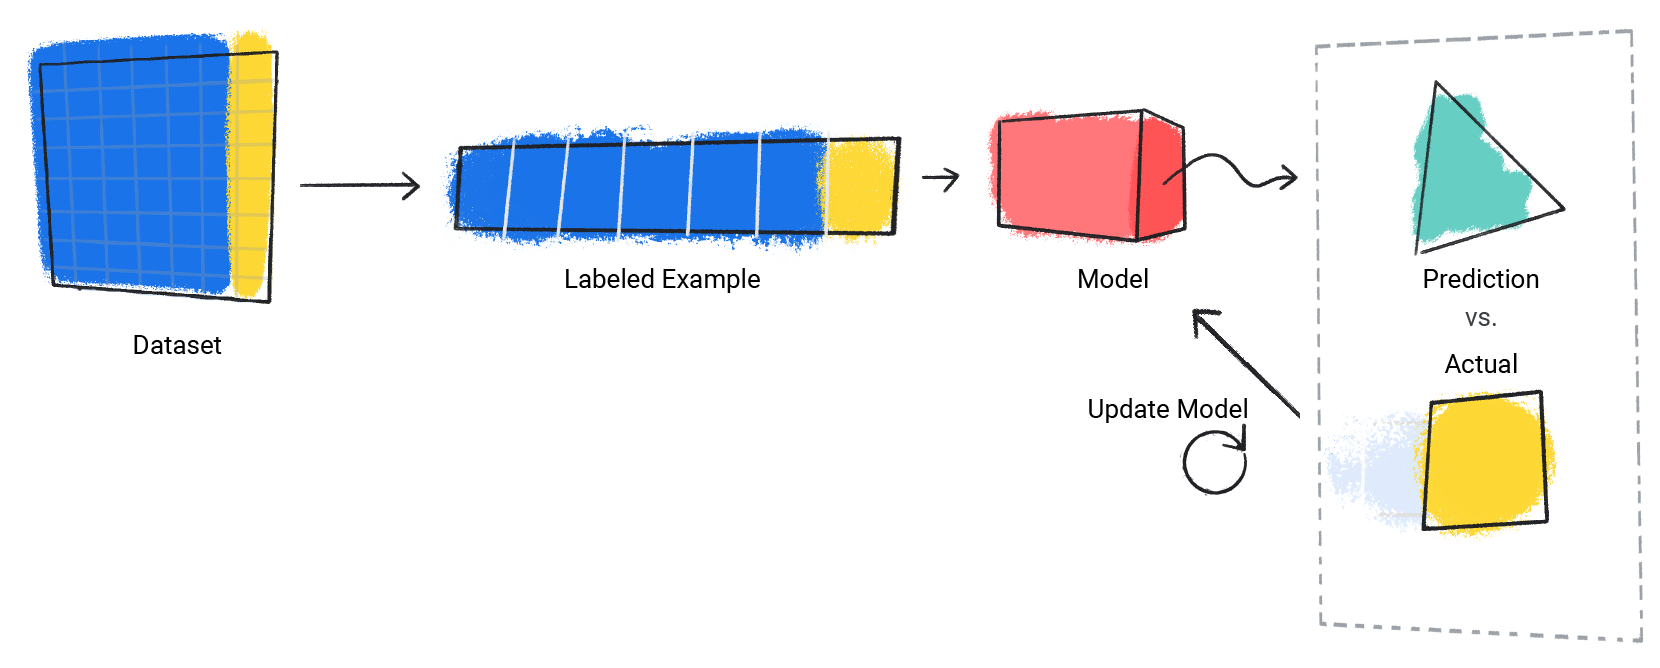 Una imagen de un modelo que repite el proceso de su predicción en comparación con el valor real.